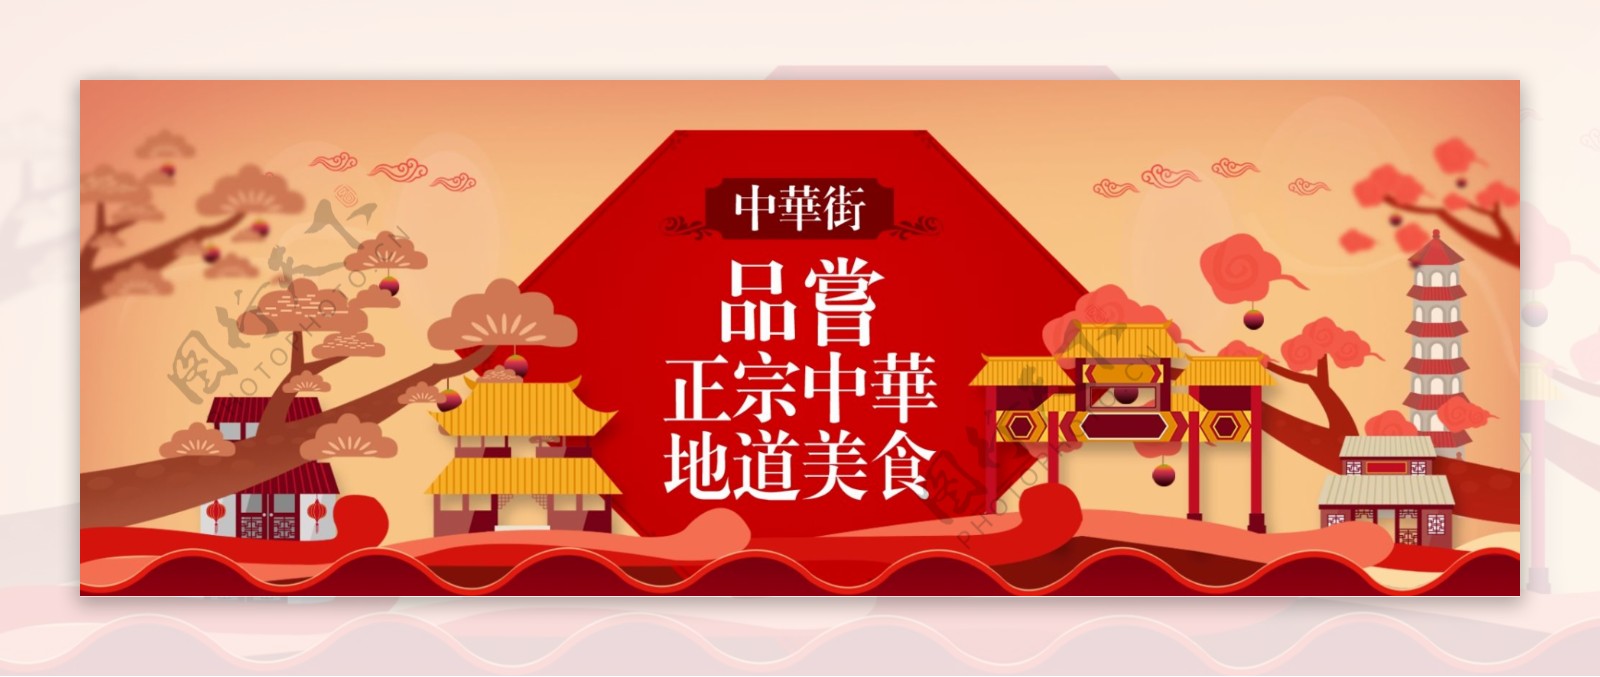 中华街美食促销中国风海报